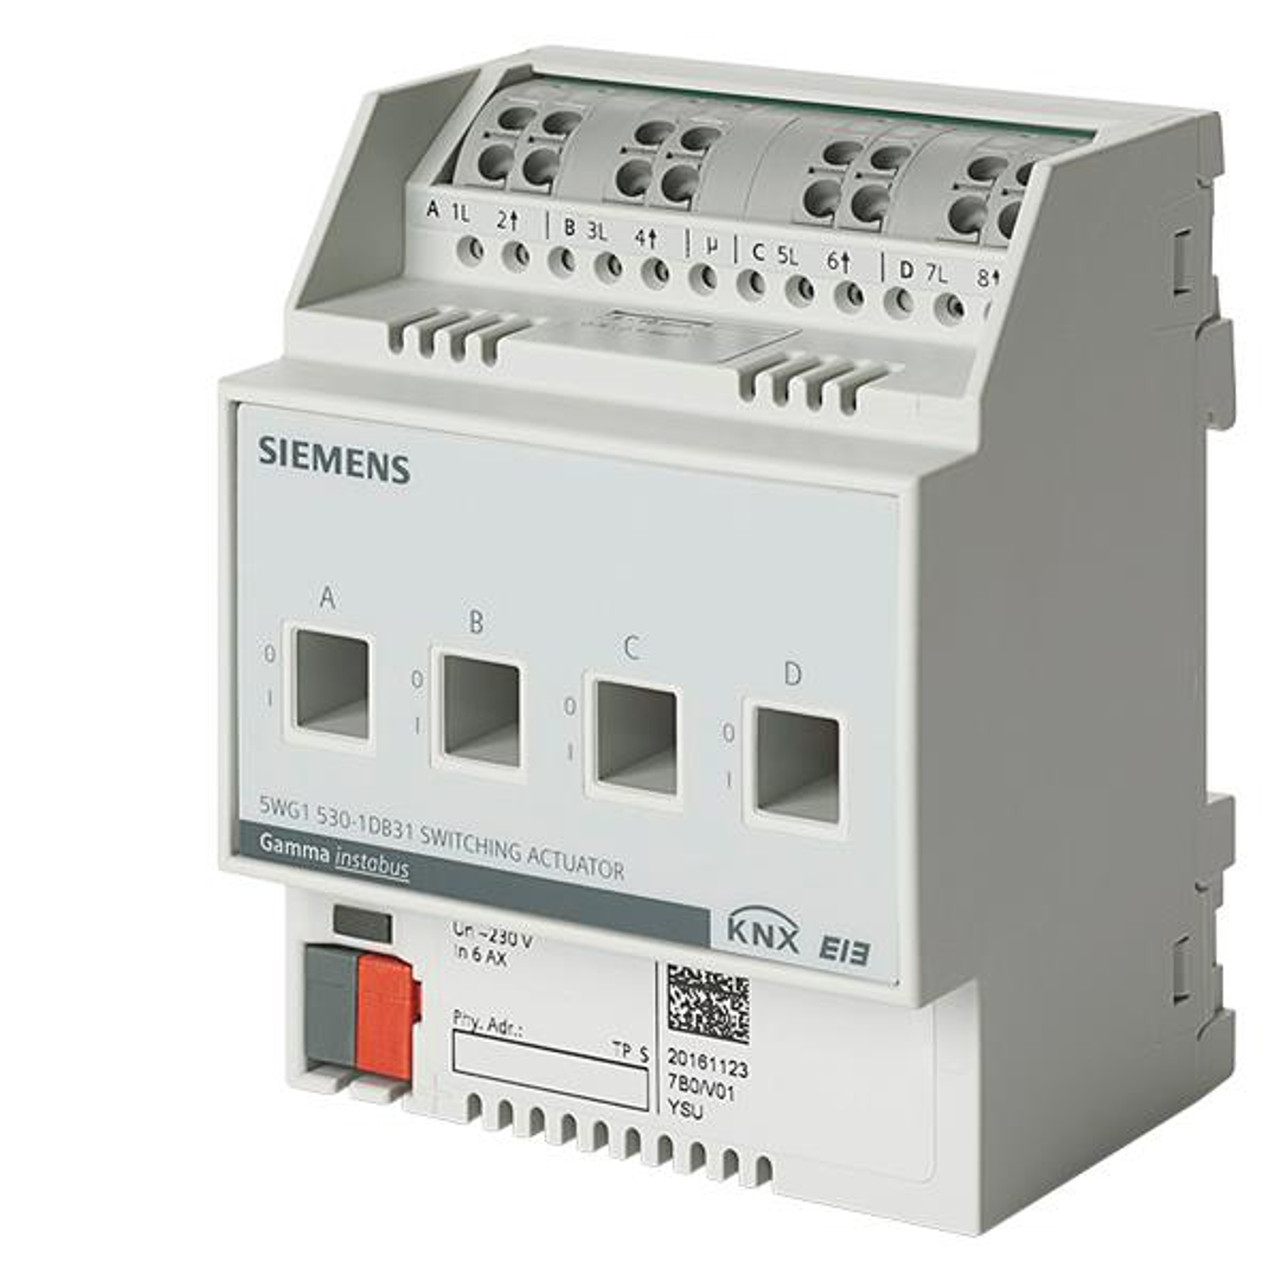 Siemens 5WG1530-1DB31, N 530D31